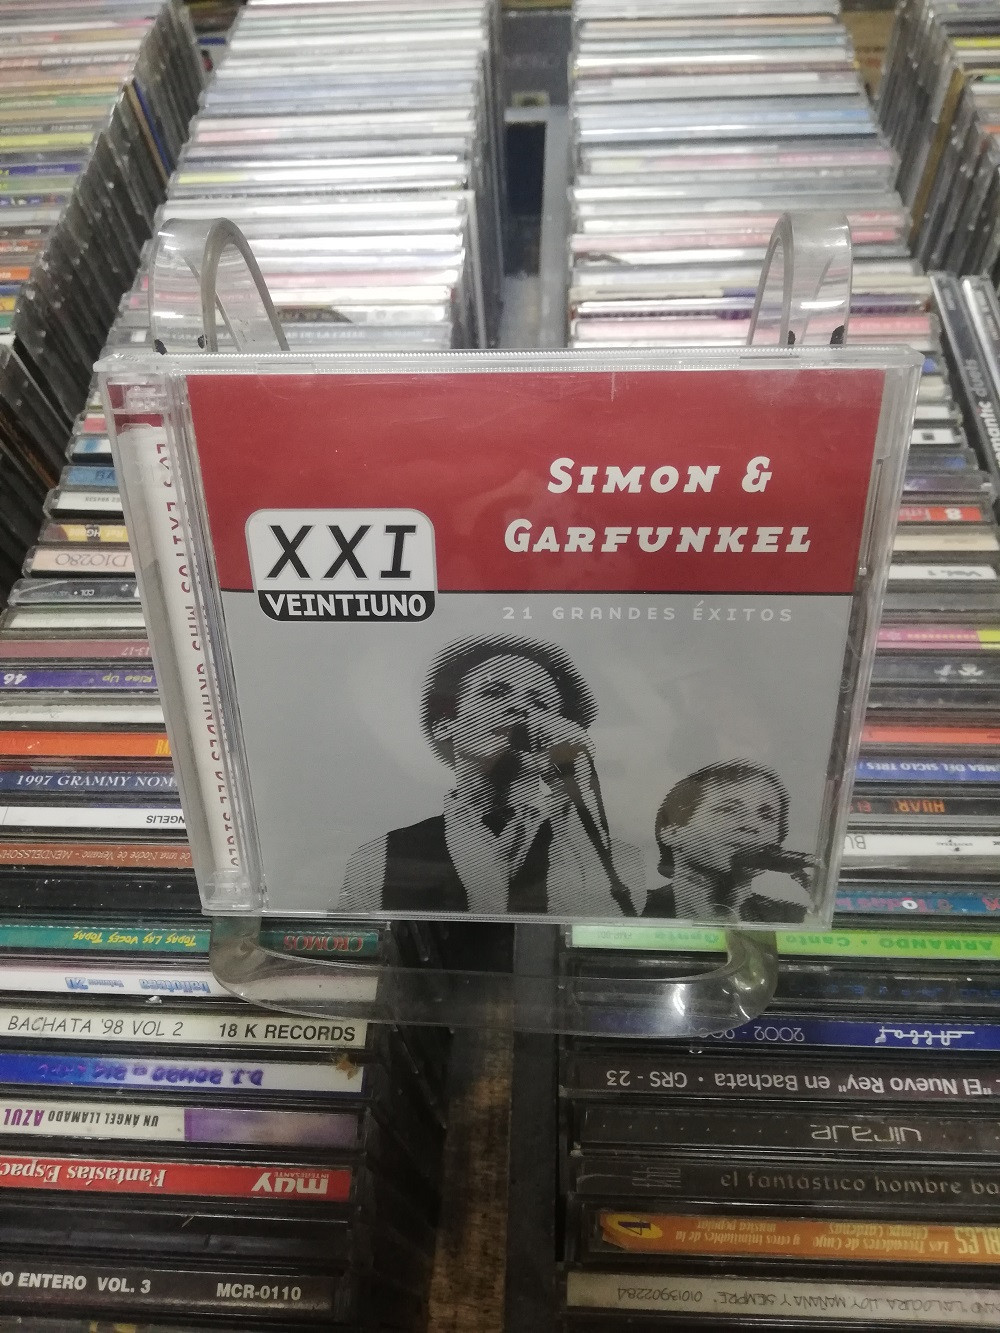 Imagen CD DOBLE SIMON AND GARFUNKEL - 21 GRANDES EXITOS 1